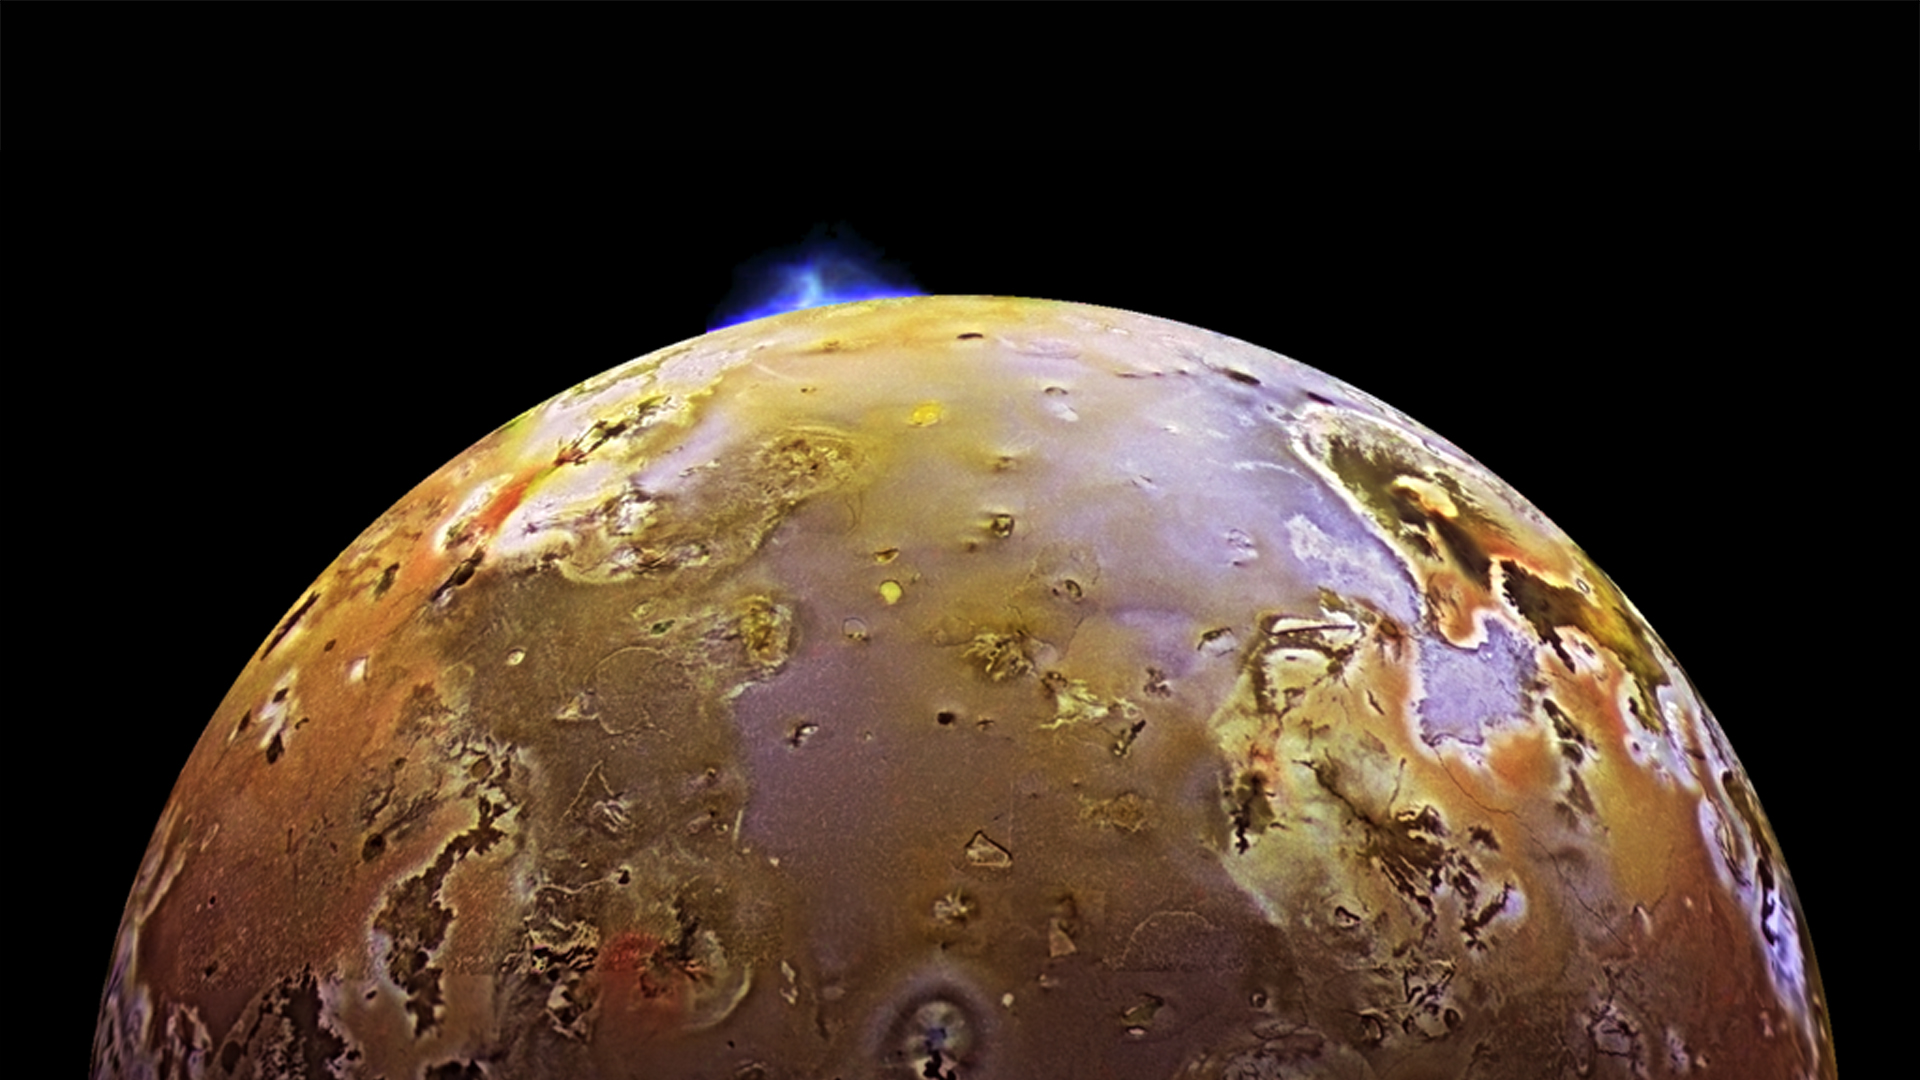 Cette photographie de Io prise par la sonde Galileo montre une éruption à Pillan Patera. C'est une caldeira volcanique d’environ 73 km de diamètre nommée d’après le dieu du tonnerre, du feu et des volcans des Indiens mapuches, dans les Andes. Au cours de l’été 1997, cette éruption a été accompagnée de laves à des températures supérieures à 1.600 °C, avec un panache de 140 km de haut. C’est la plus importante éruption effusive dont l’Homme ait jamais été témoin avec au moins 31 km3 de laves émises sur une période de 100 jours. © Nasa, JPL, University of Arizona